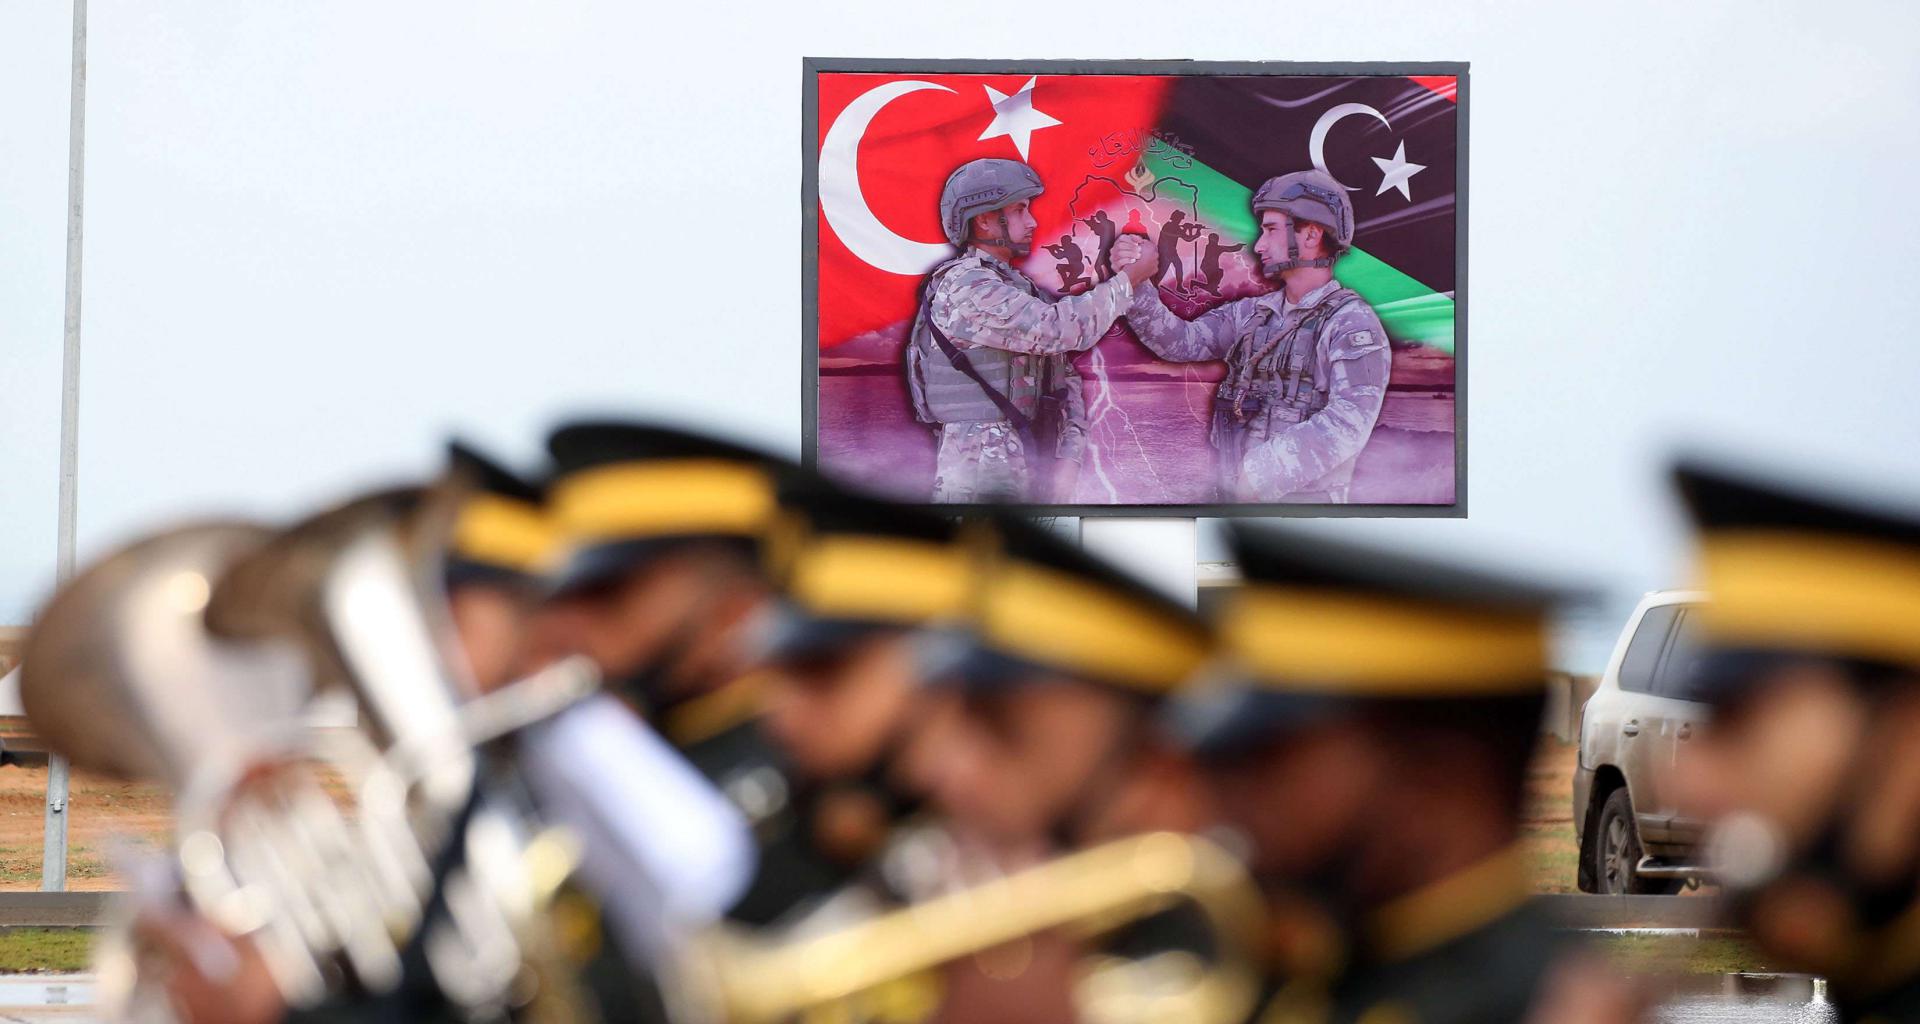 تركيا تجادل بأن وجودها العسكري في ليبيا "شرعي" استند إلى اتفاقيات ثنائية